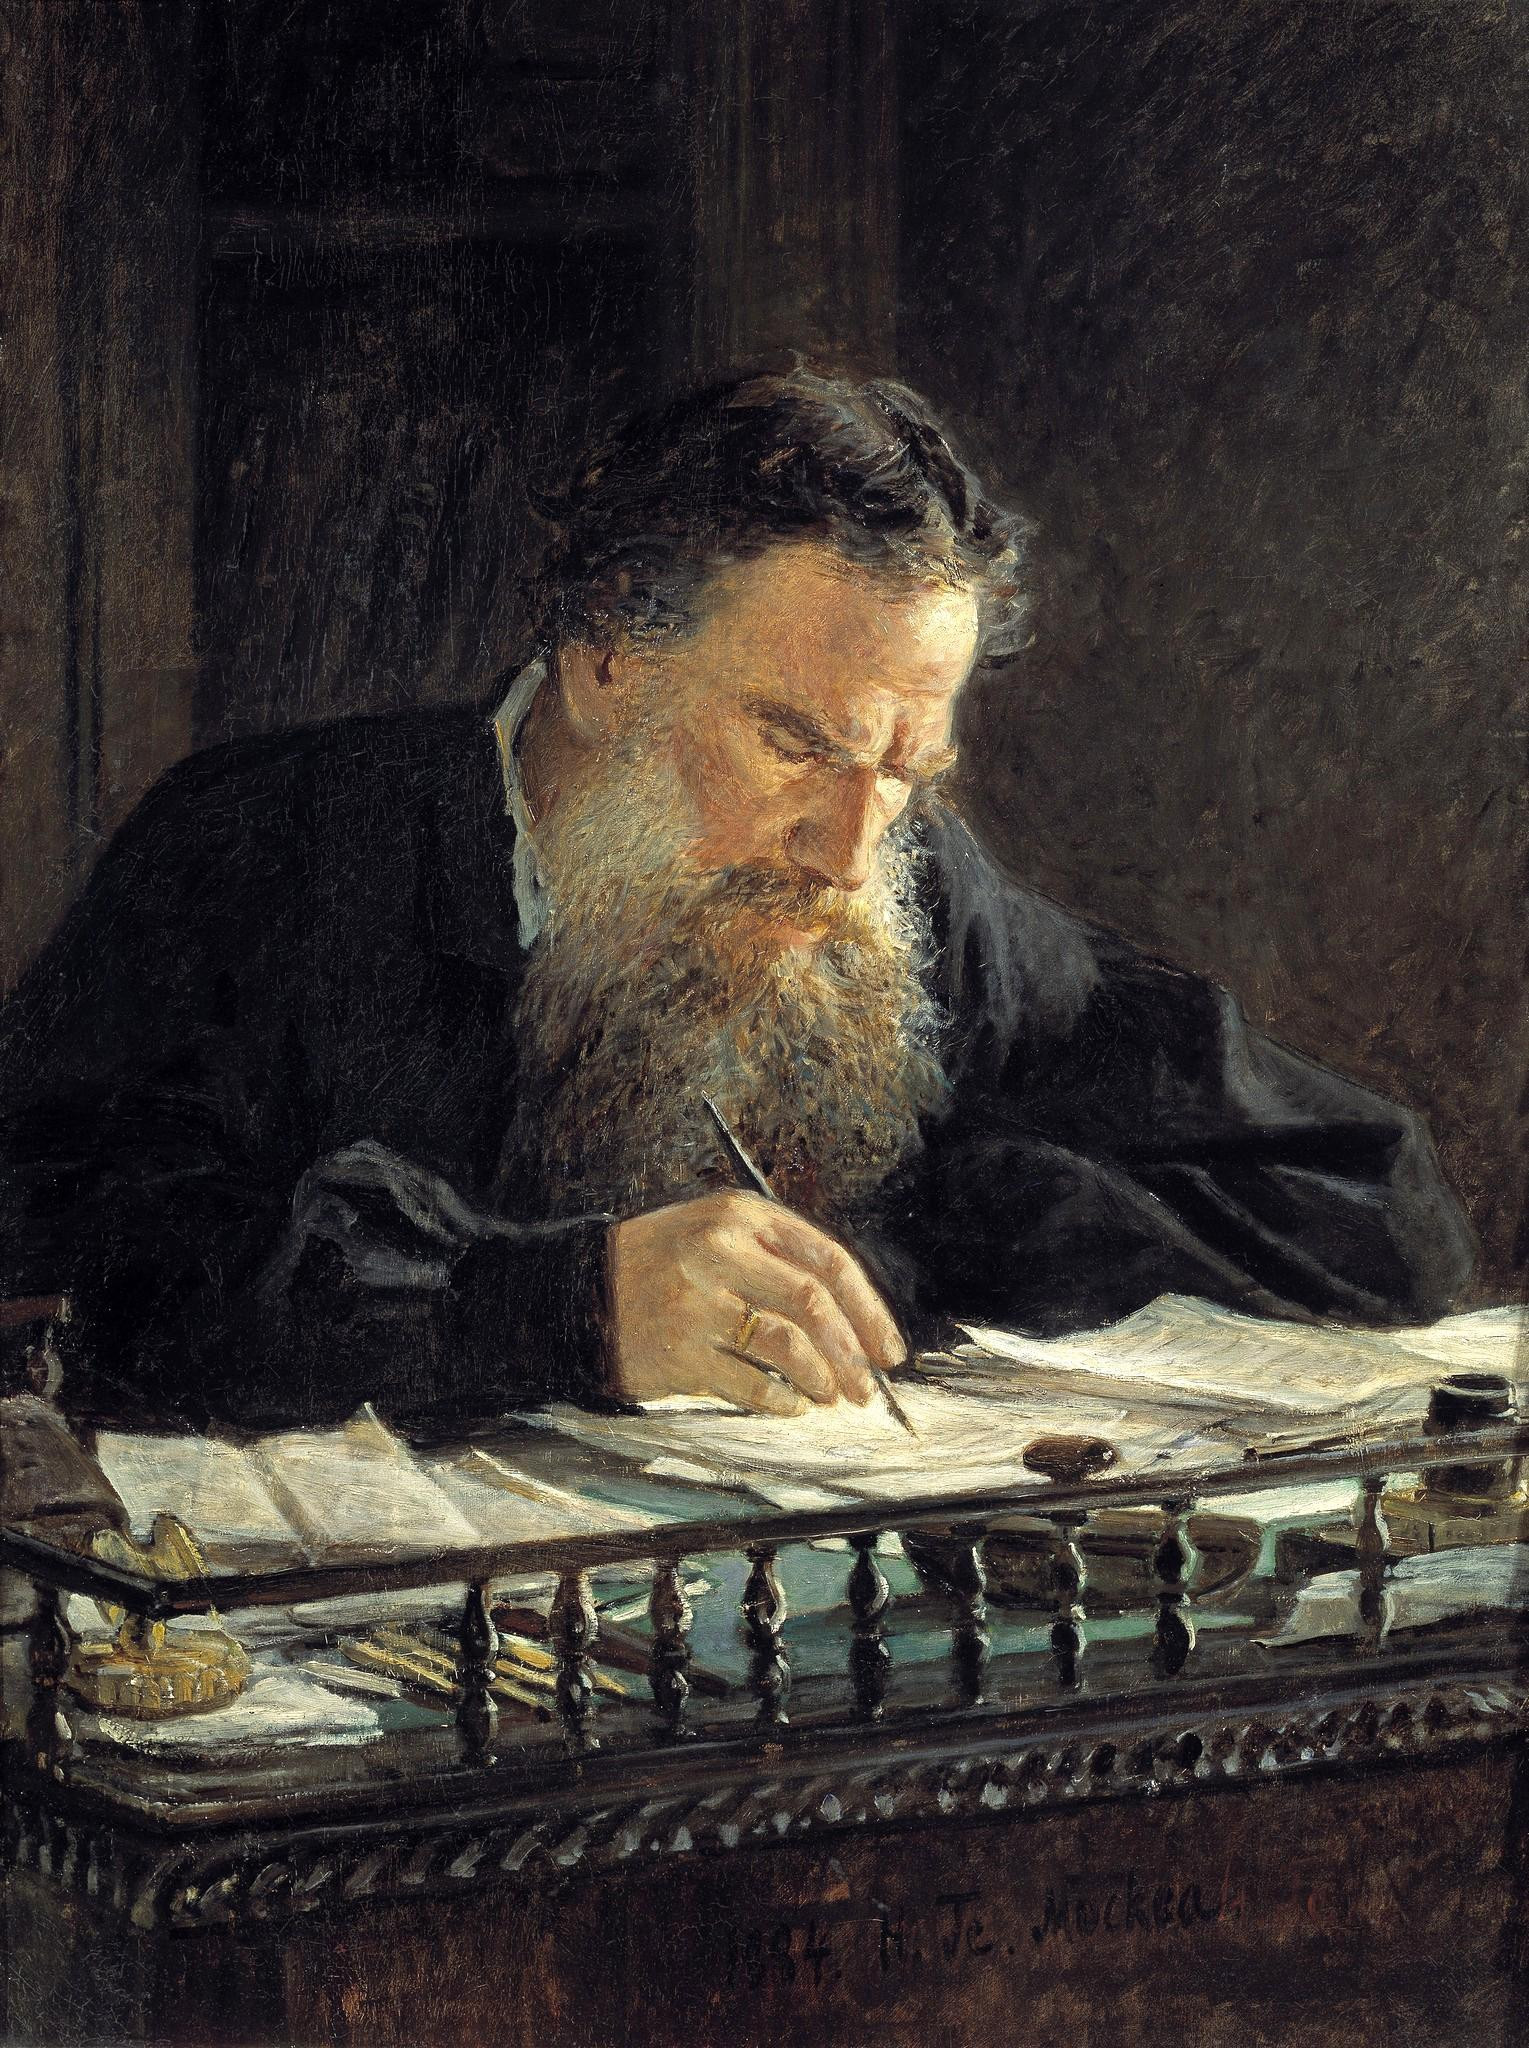 Retrato de Tolstói de Nikolai Ge.